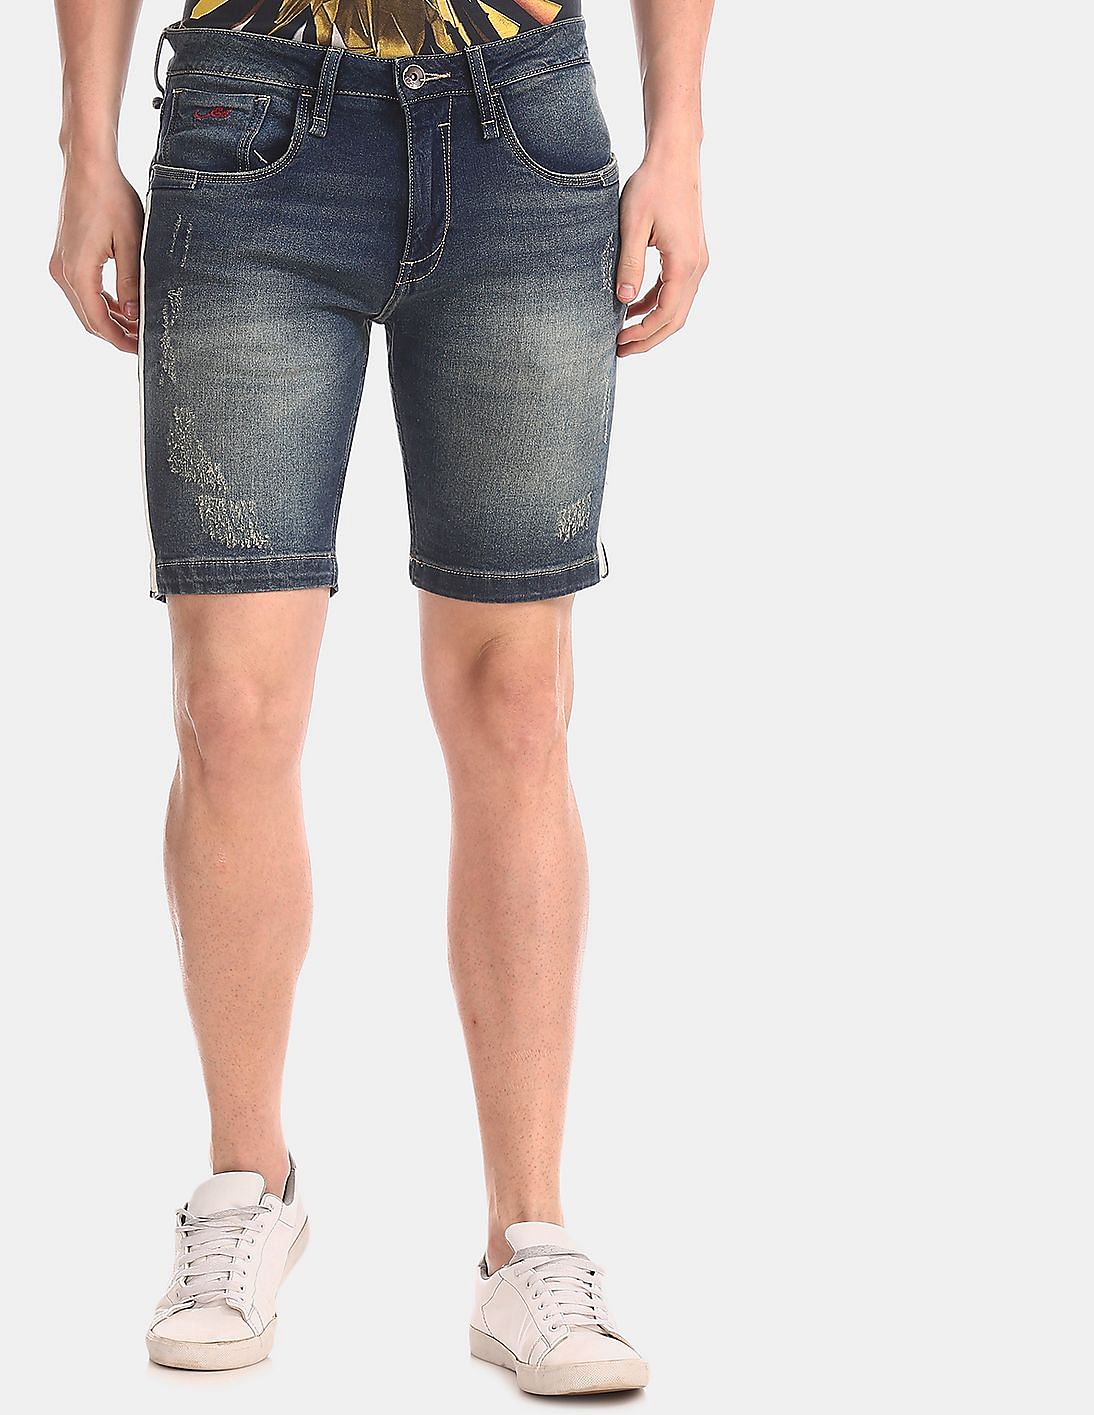 Buy Ed Hardy Dagger Slim Fit Washed Denim Shorts - NNNOW.com